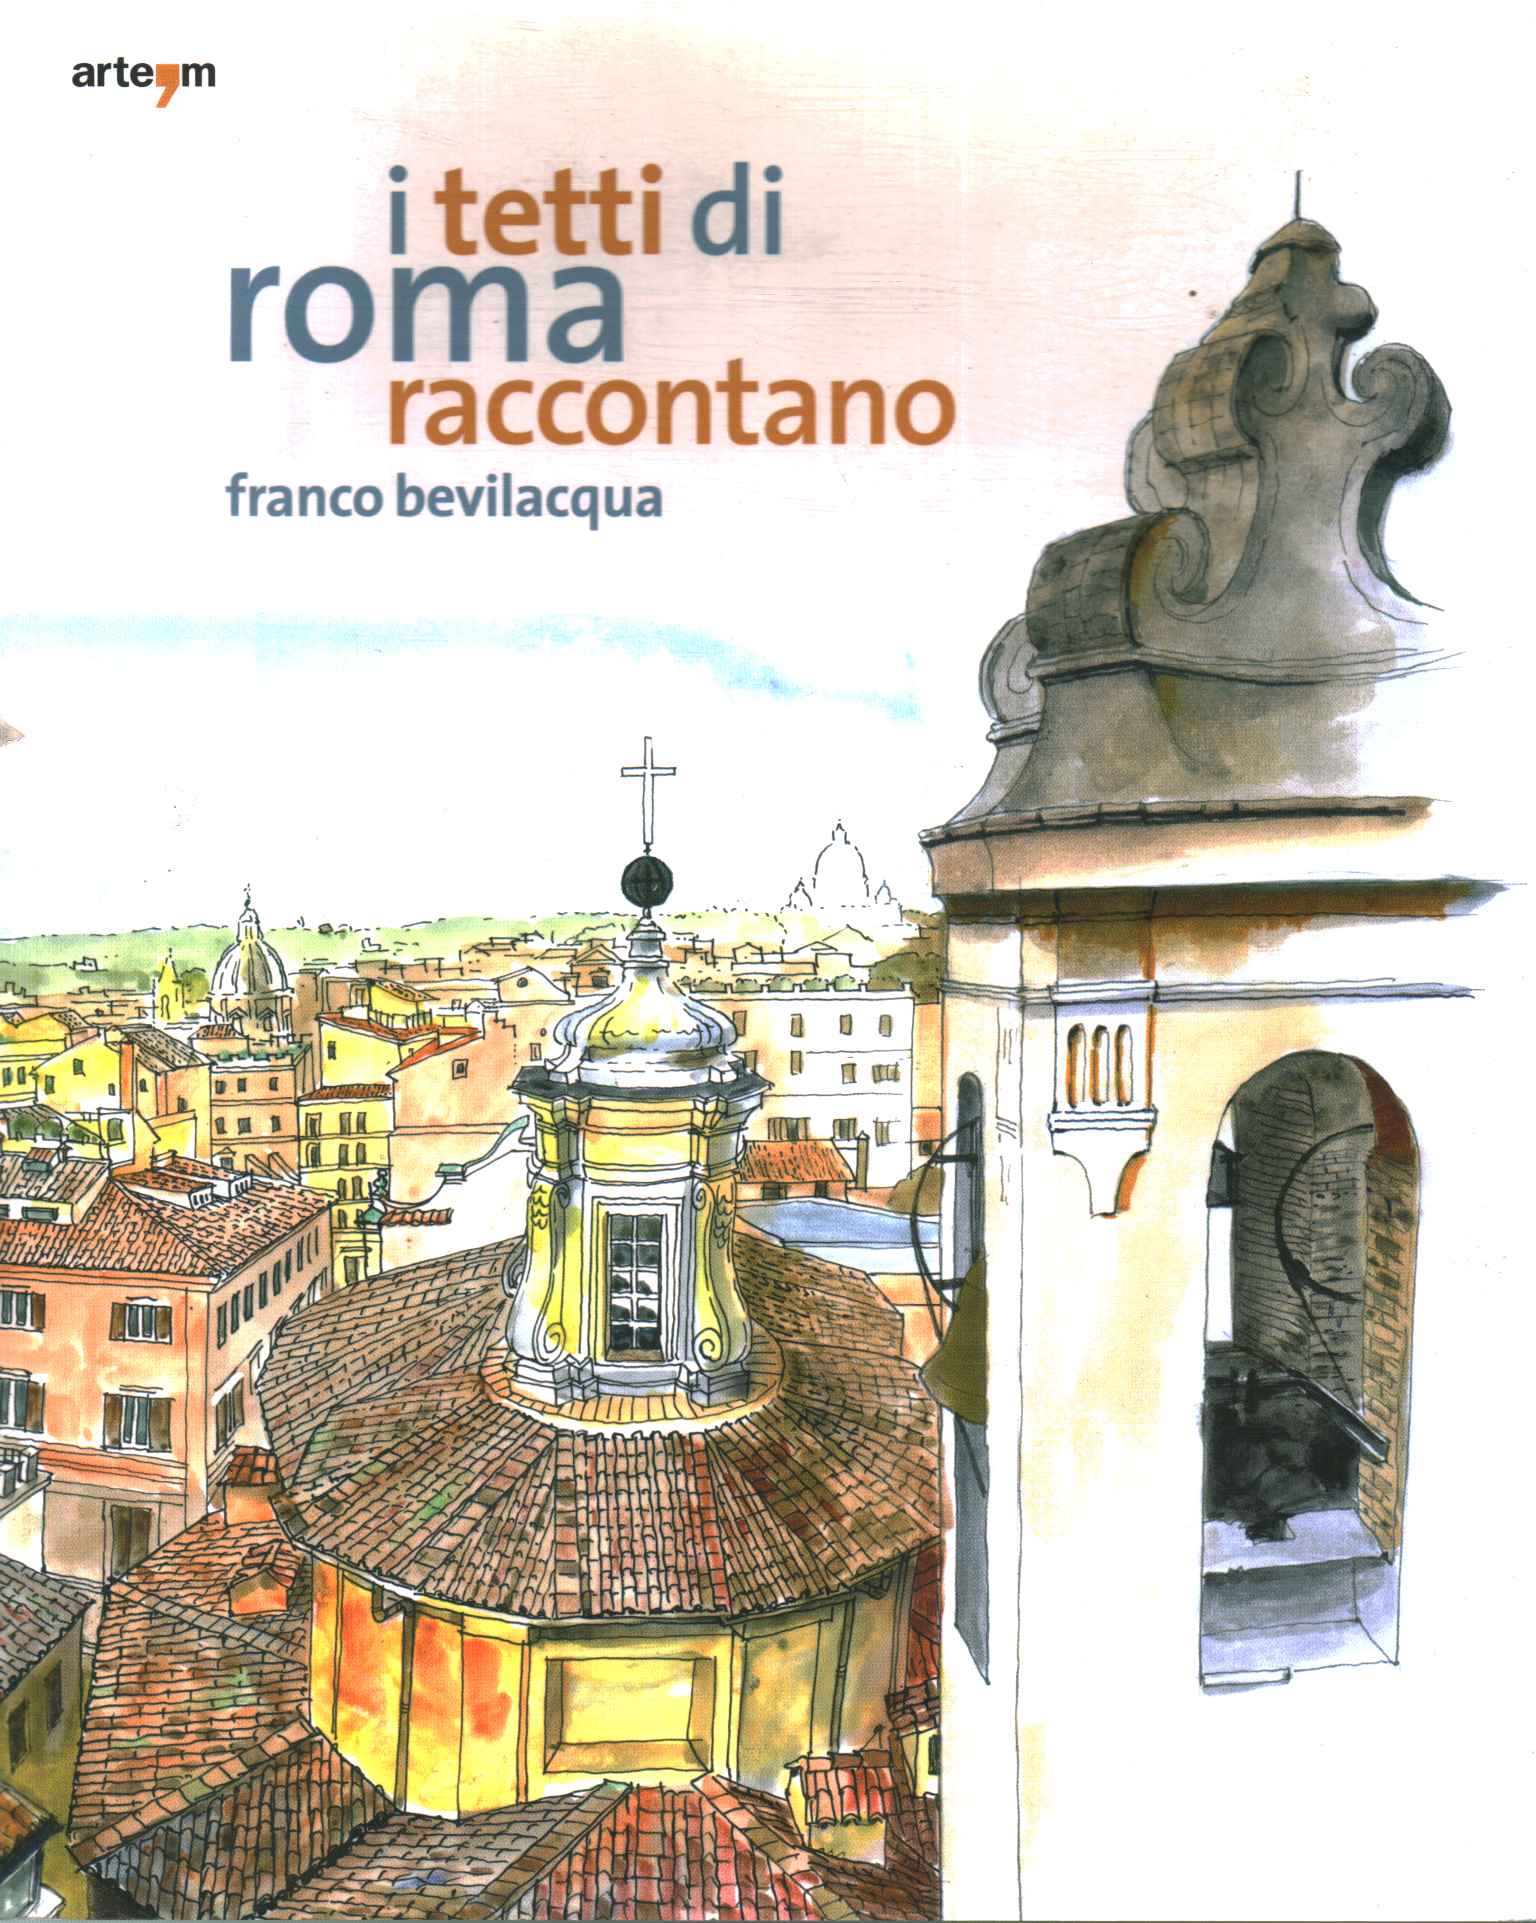 Les toits de Rome racontent une histoire